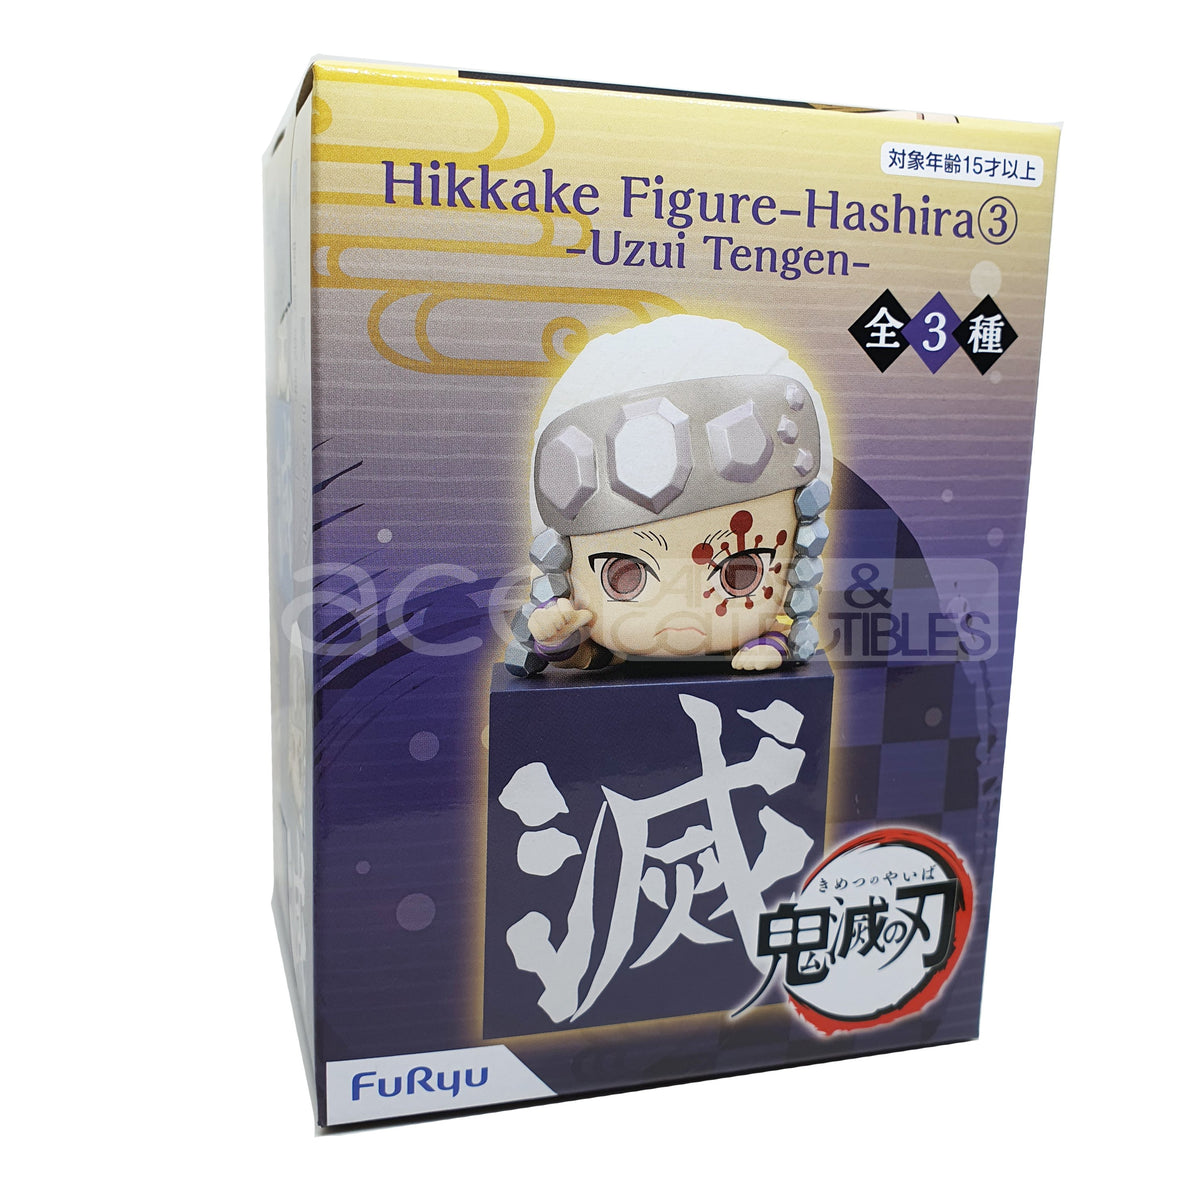 Demon Slayer: Kimetsu no Yaiba Hikkake Figure Hashira 3rd Set (Reissue)-Tengen Uzui-FuRyu-Ace Cards &amp; Collectibles